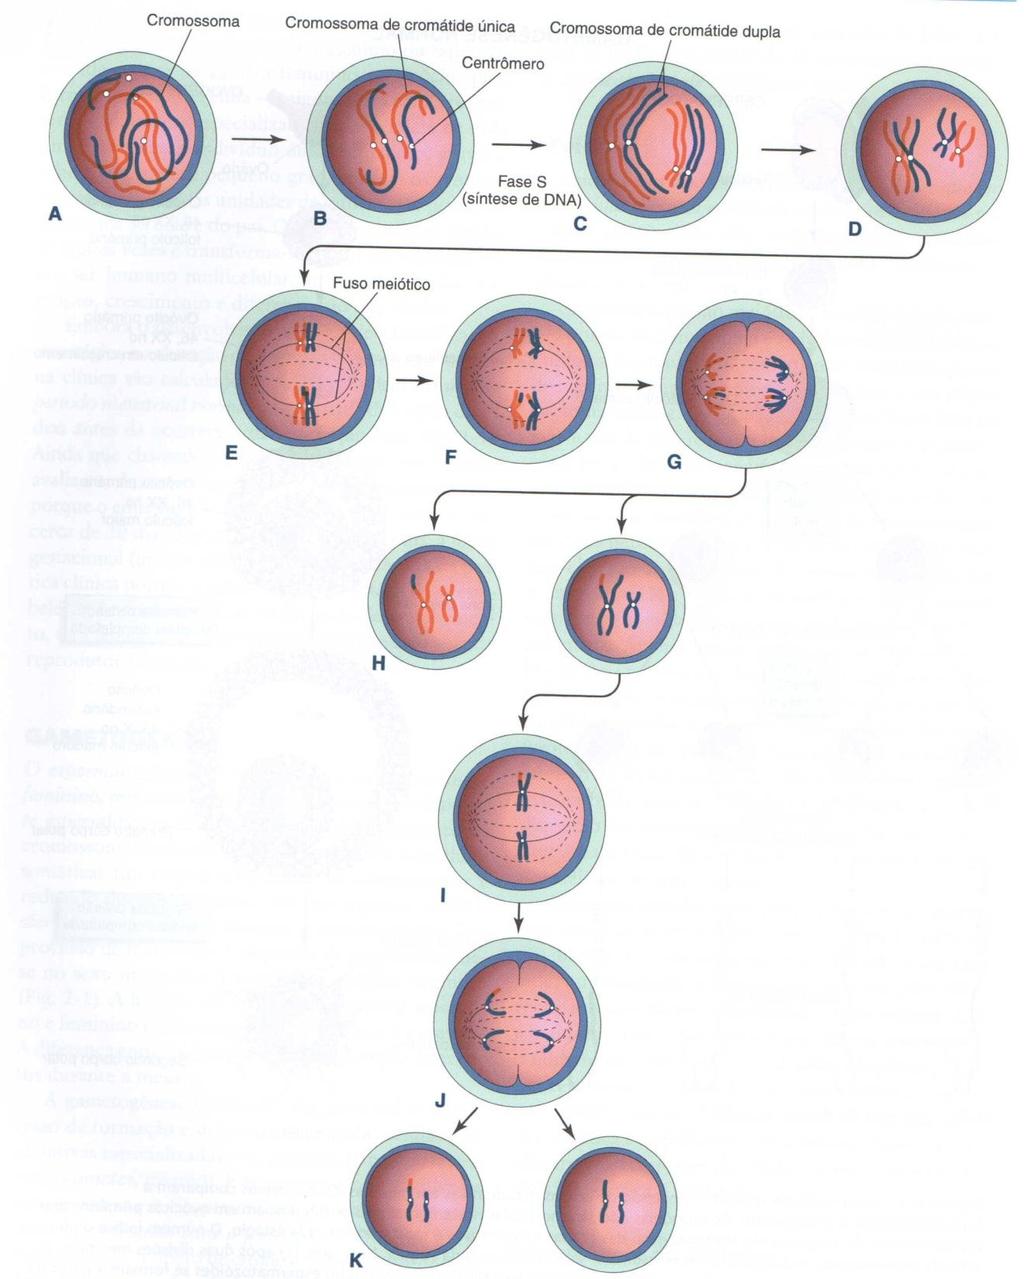 1ª Meiose (reducional) cromossomos se aproximam e Prófase formam pares com 2 cromátides Metáfase 2 cromossomos do par orientam-se no fuso meiótico Fim da 1ª meiose Pares de